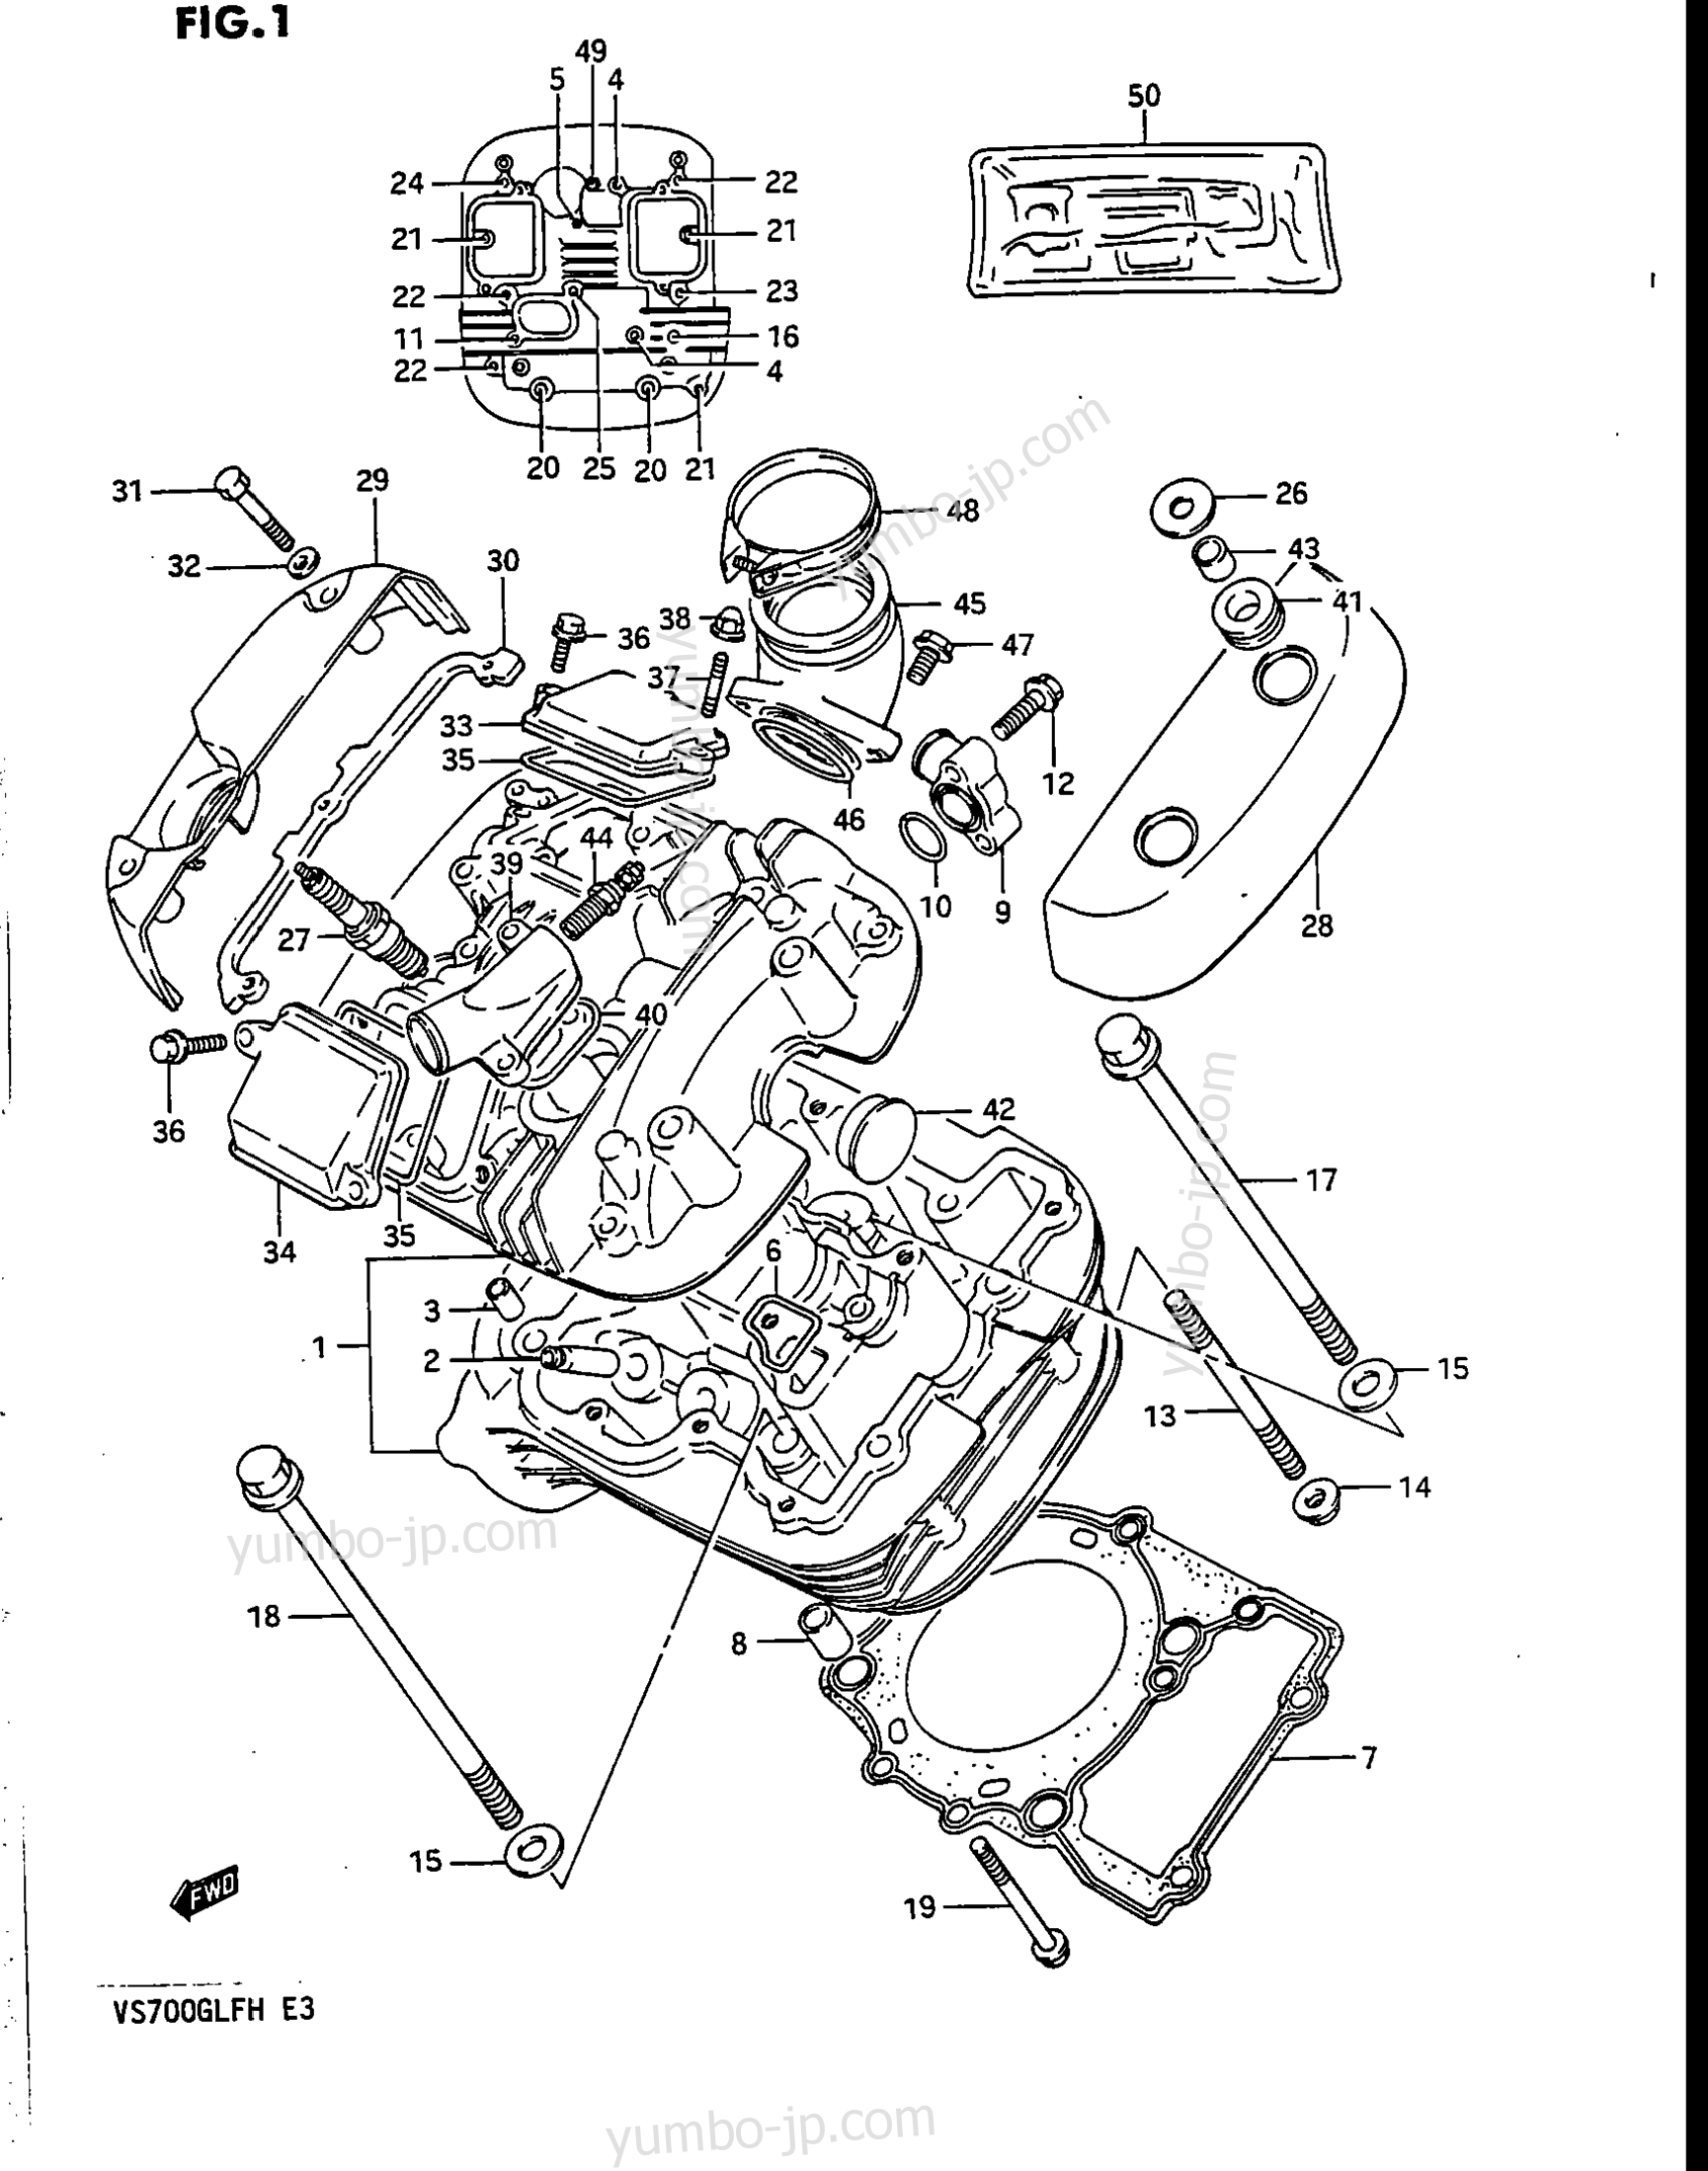 CYLINDER HEAD (FRONT) for motorcycles SUZUKI Intruder (VS700GLF) 1987 year